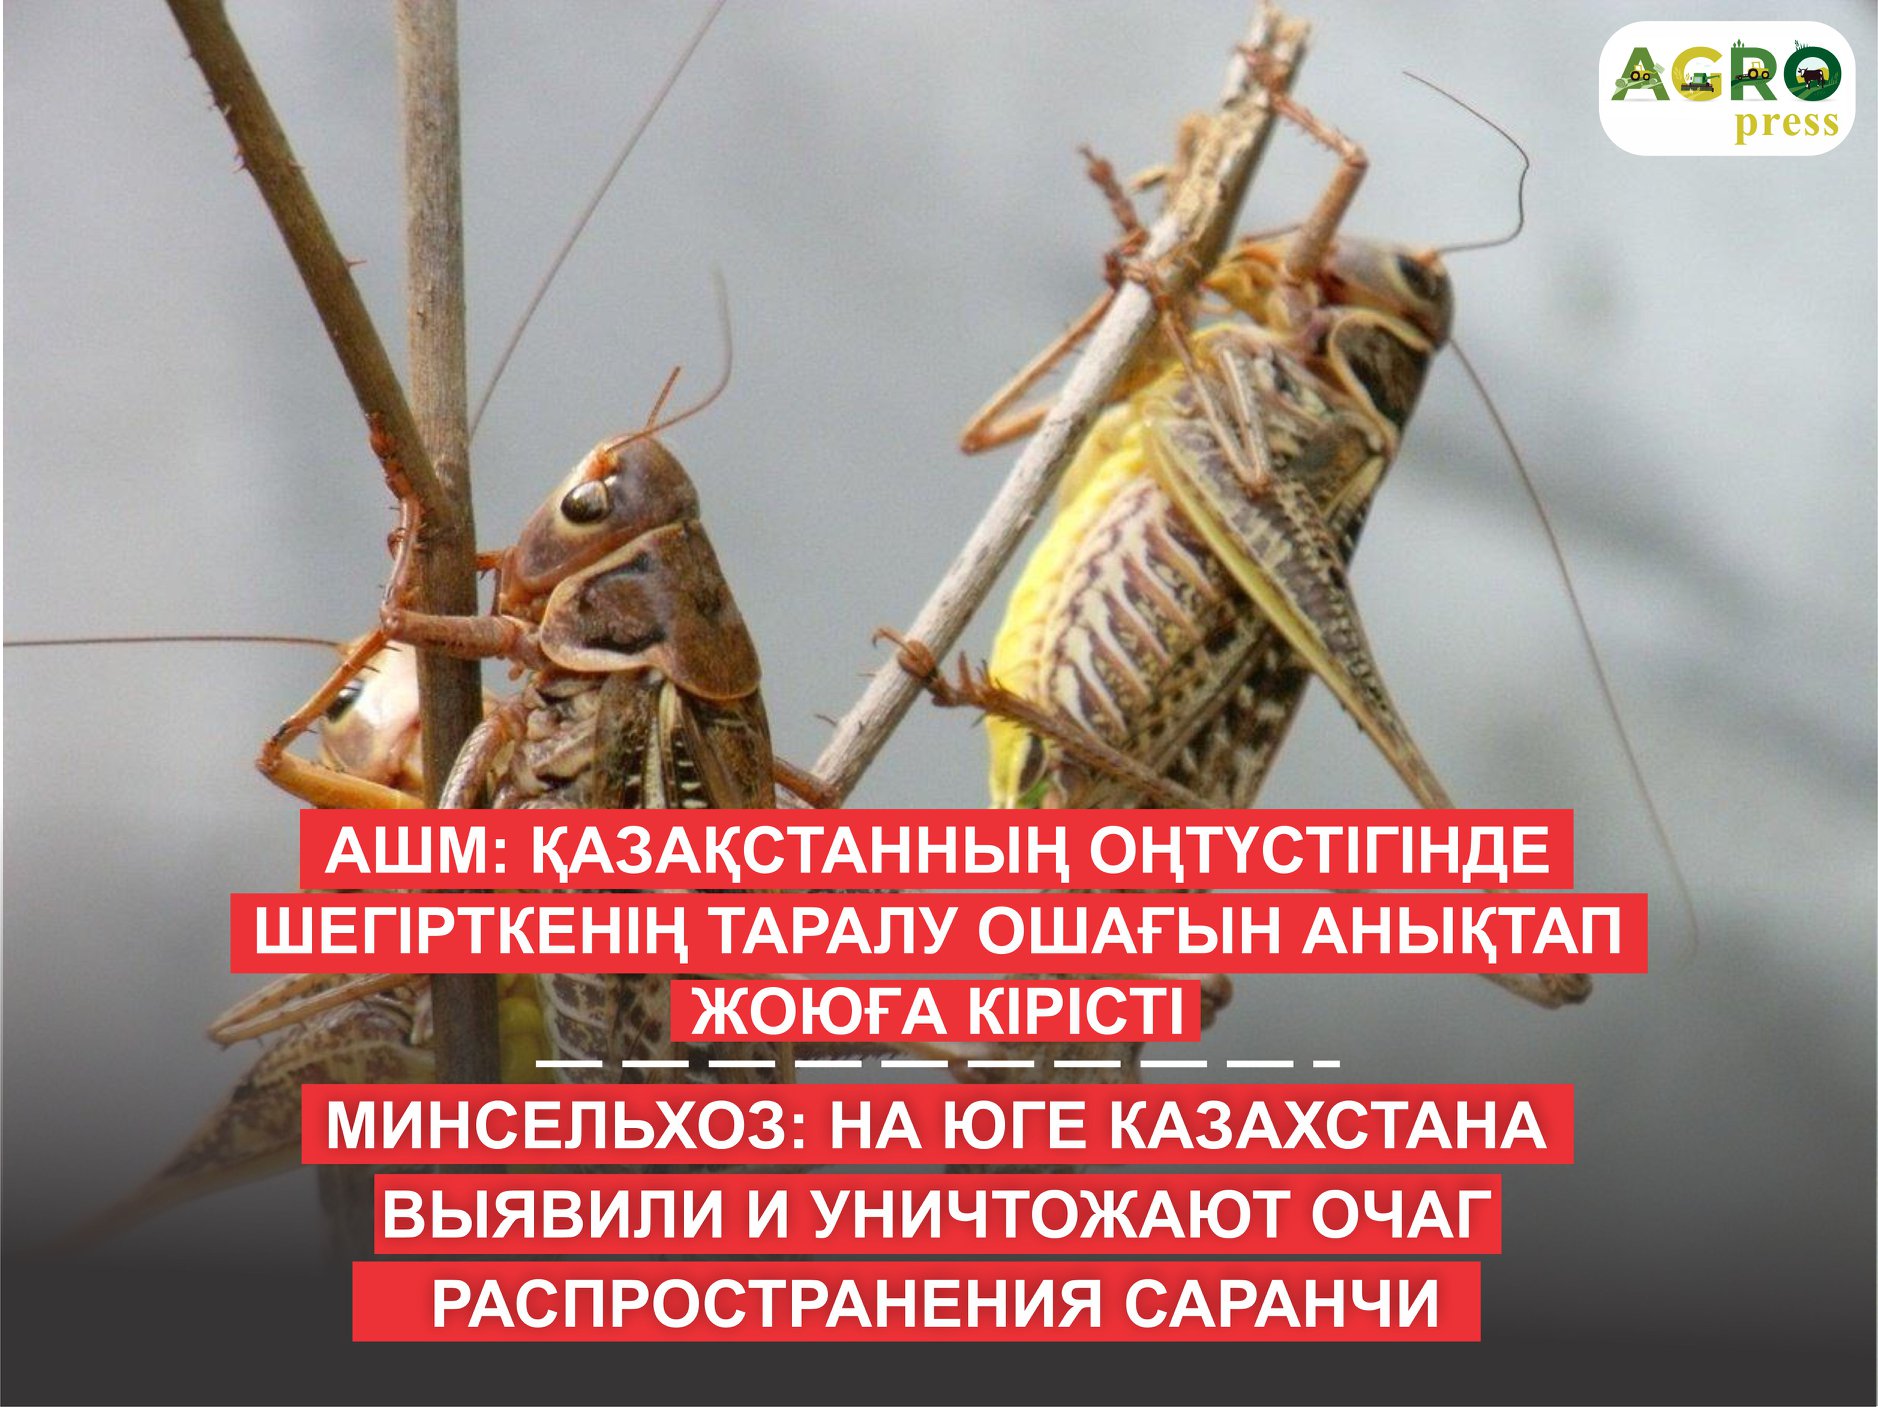 На юге Казахстана уничтожают очаг распространения саранчи